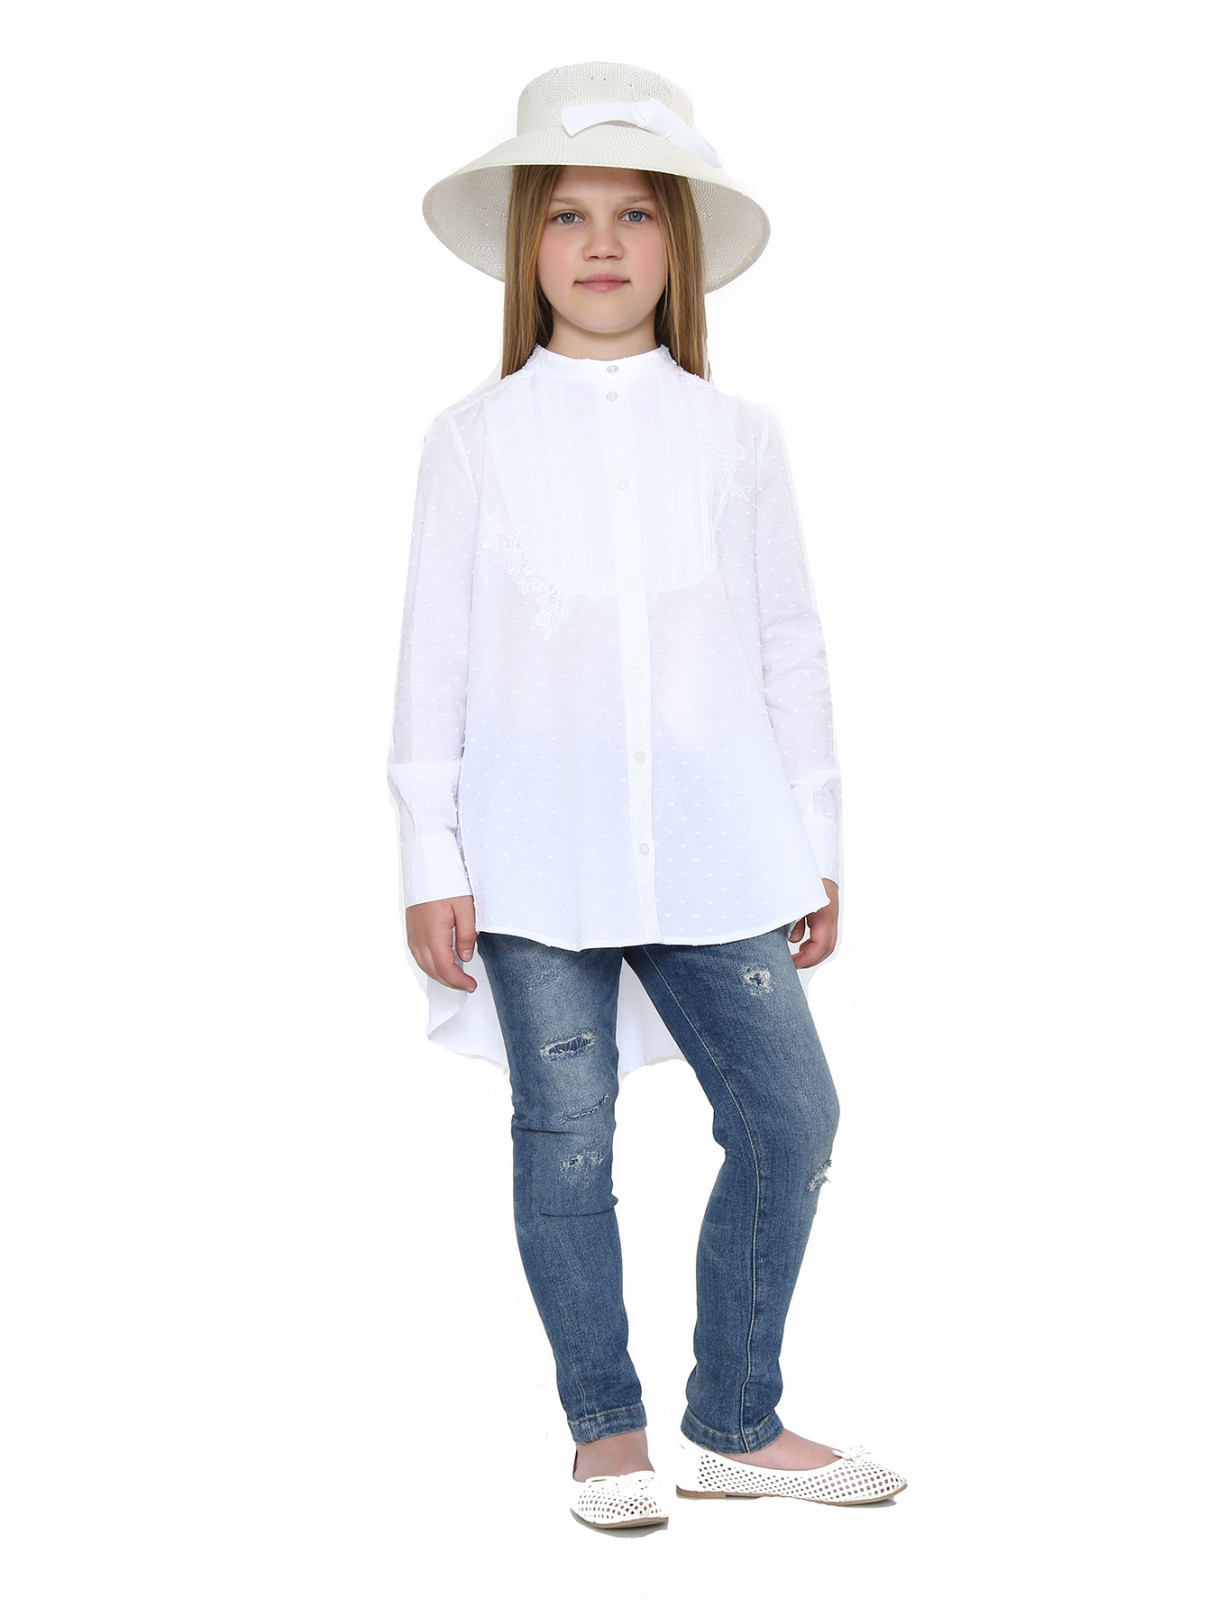 Шляпа с декором MiMiSol  –  Модель Общий вид  – Цвет:  Белый